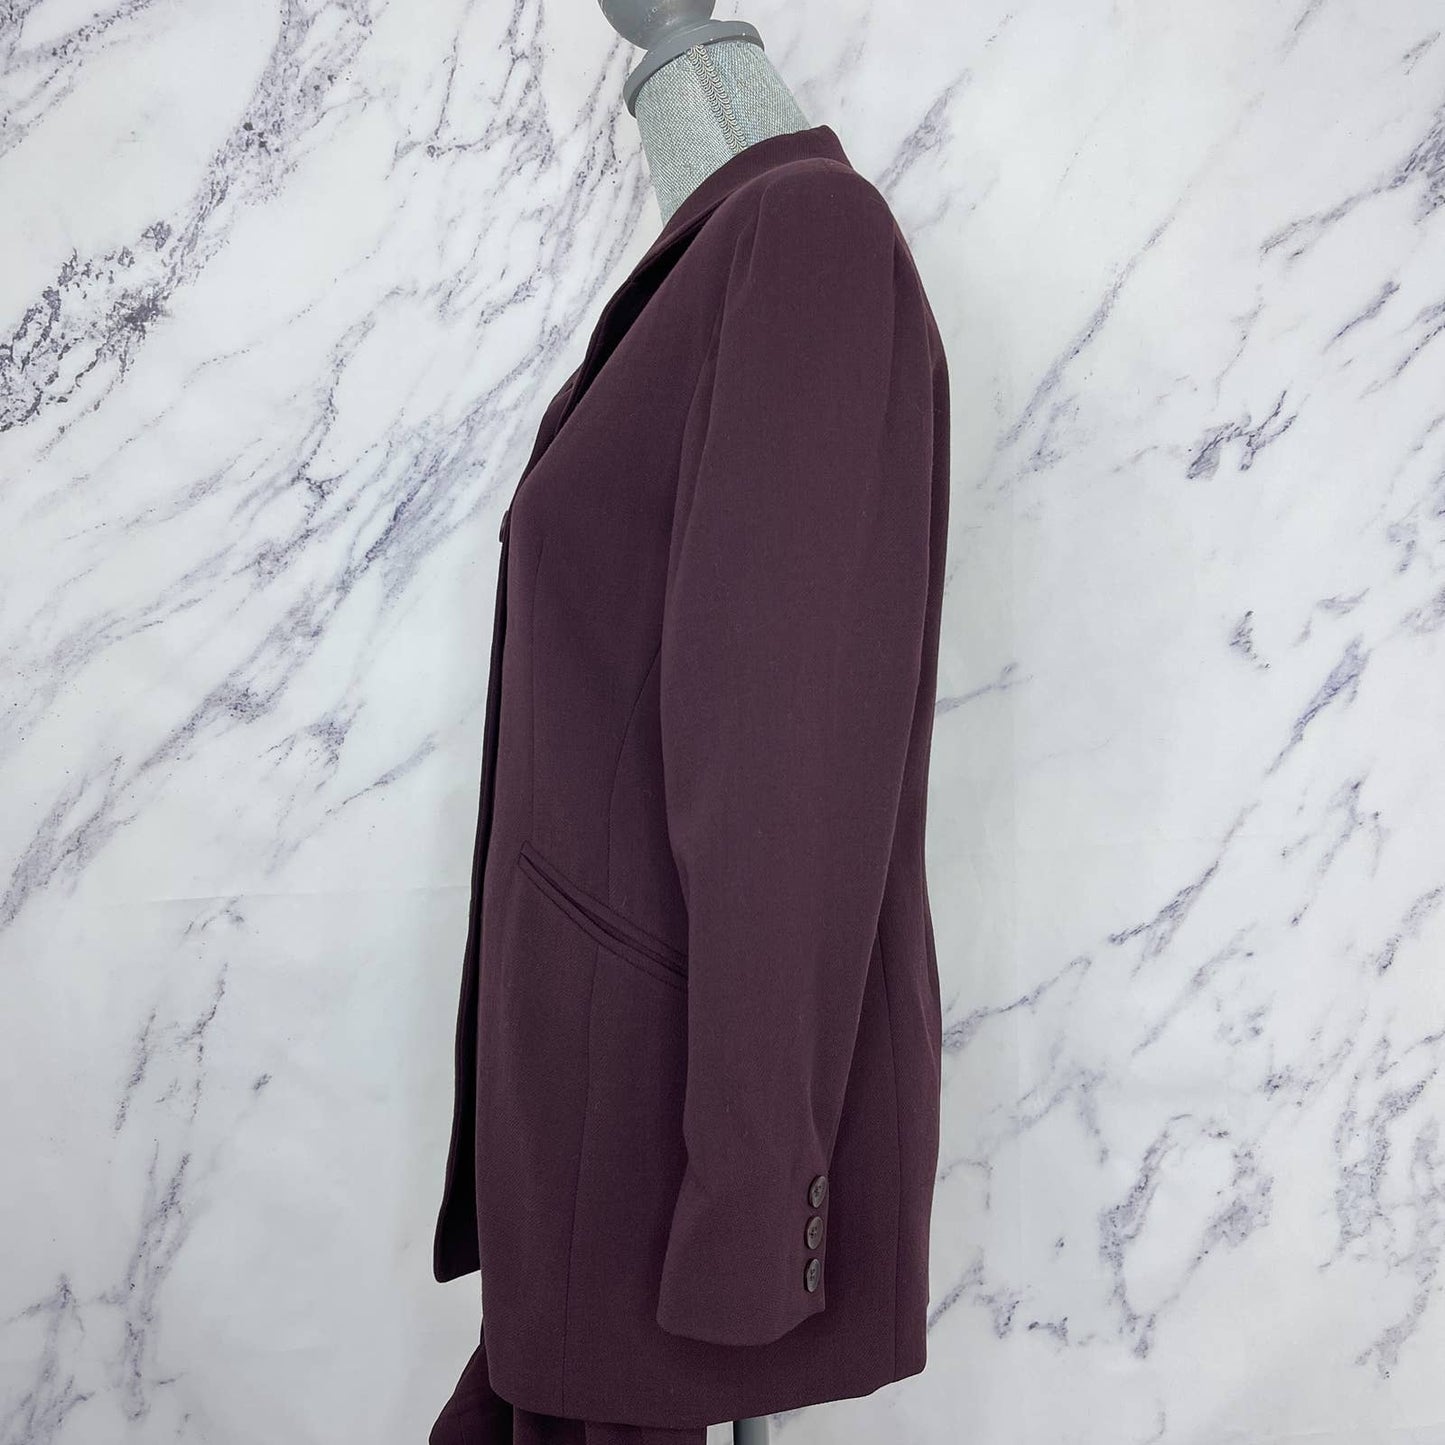 Emanuel |Emanuel Ungaro | Blazer/Suit Coat | Sz 4P 4/38